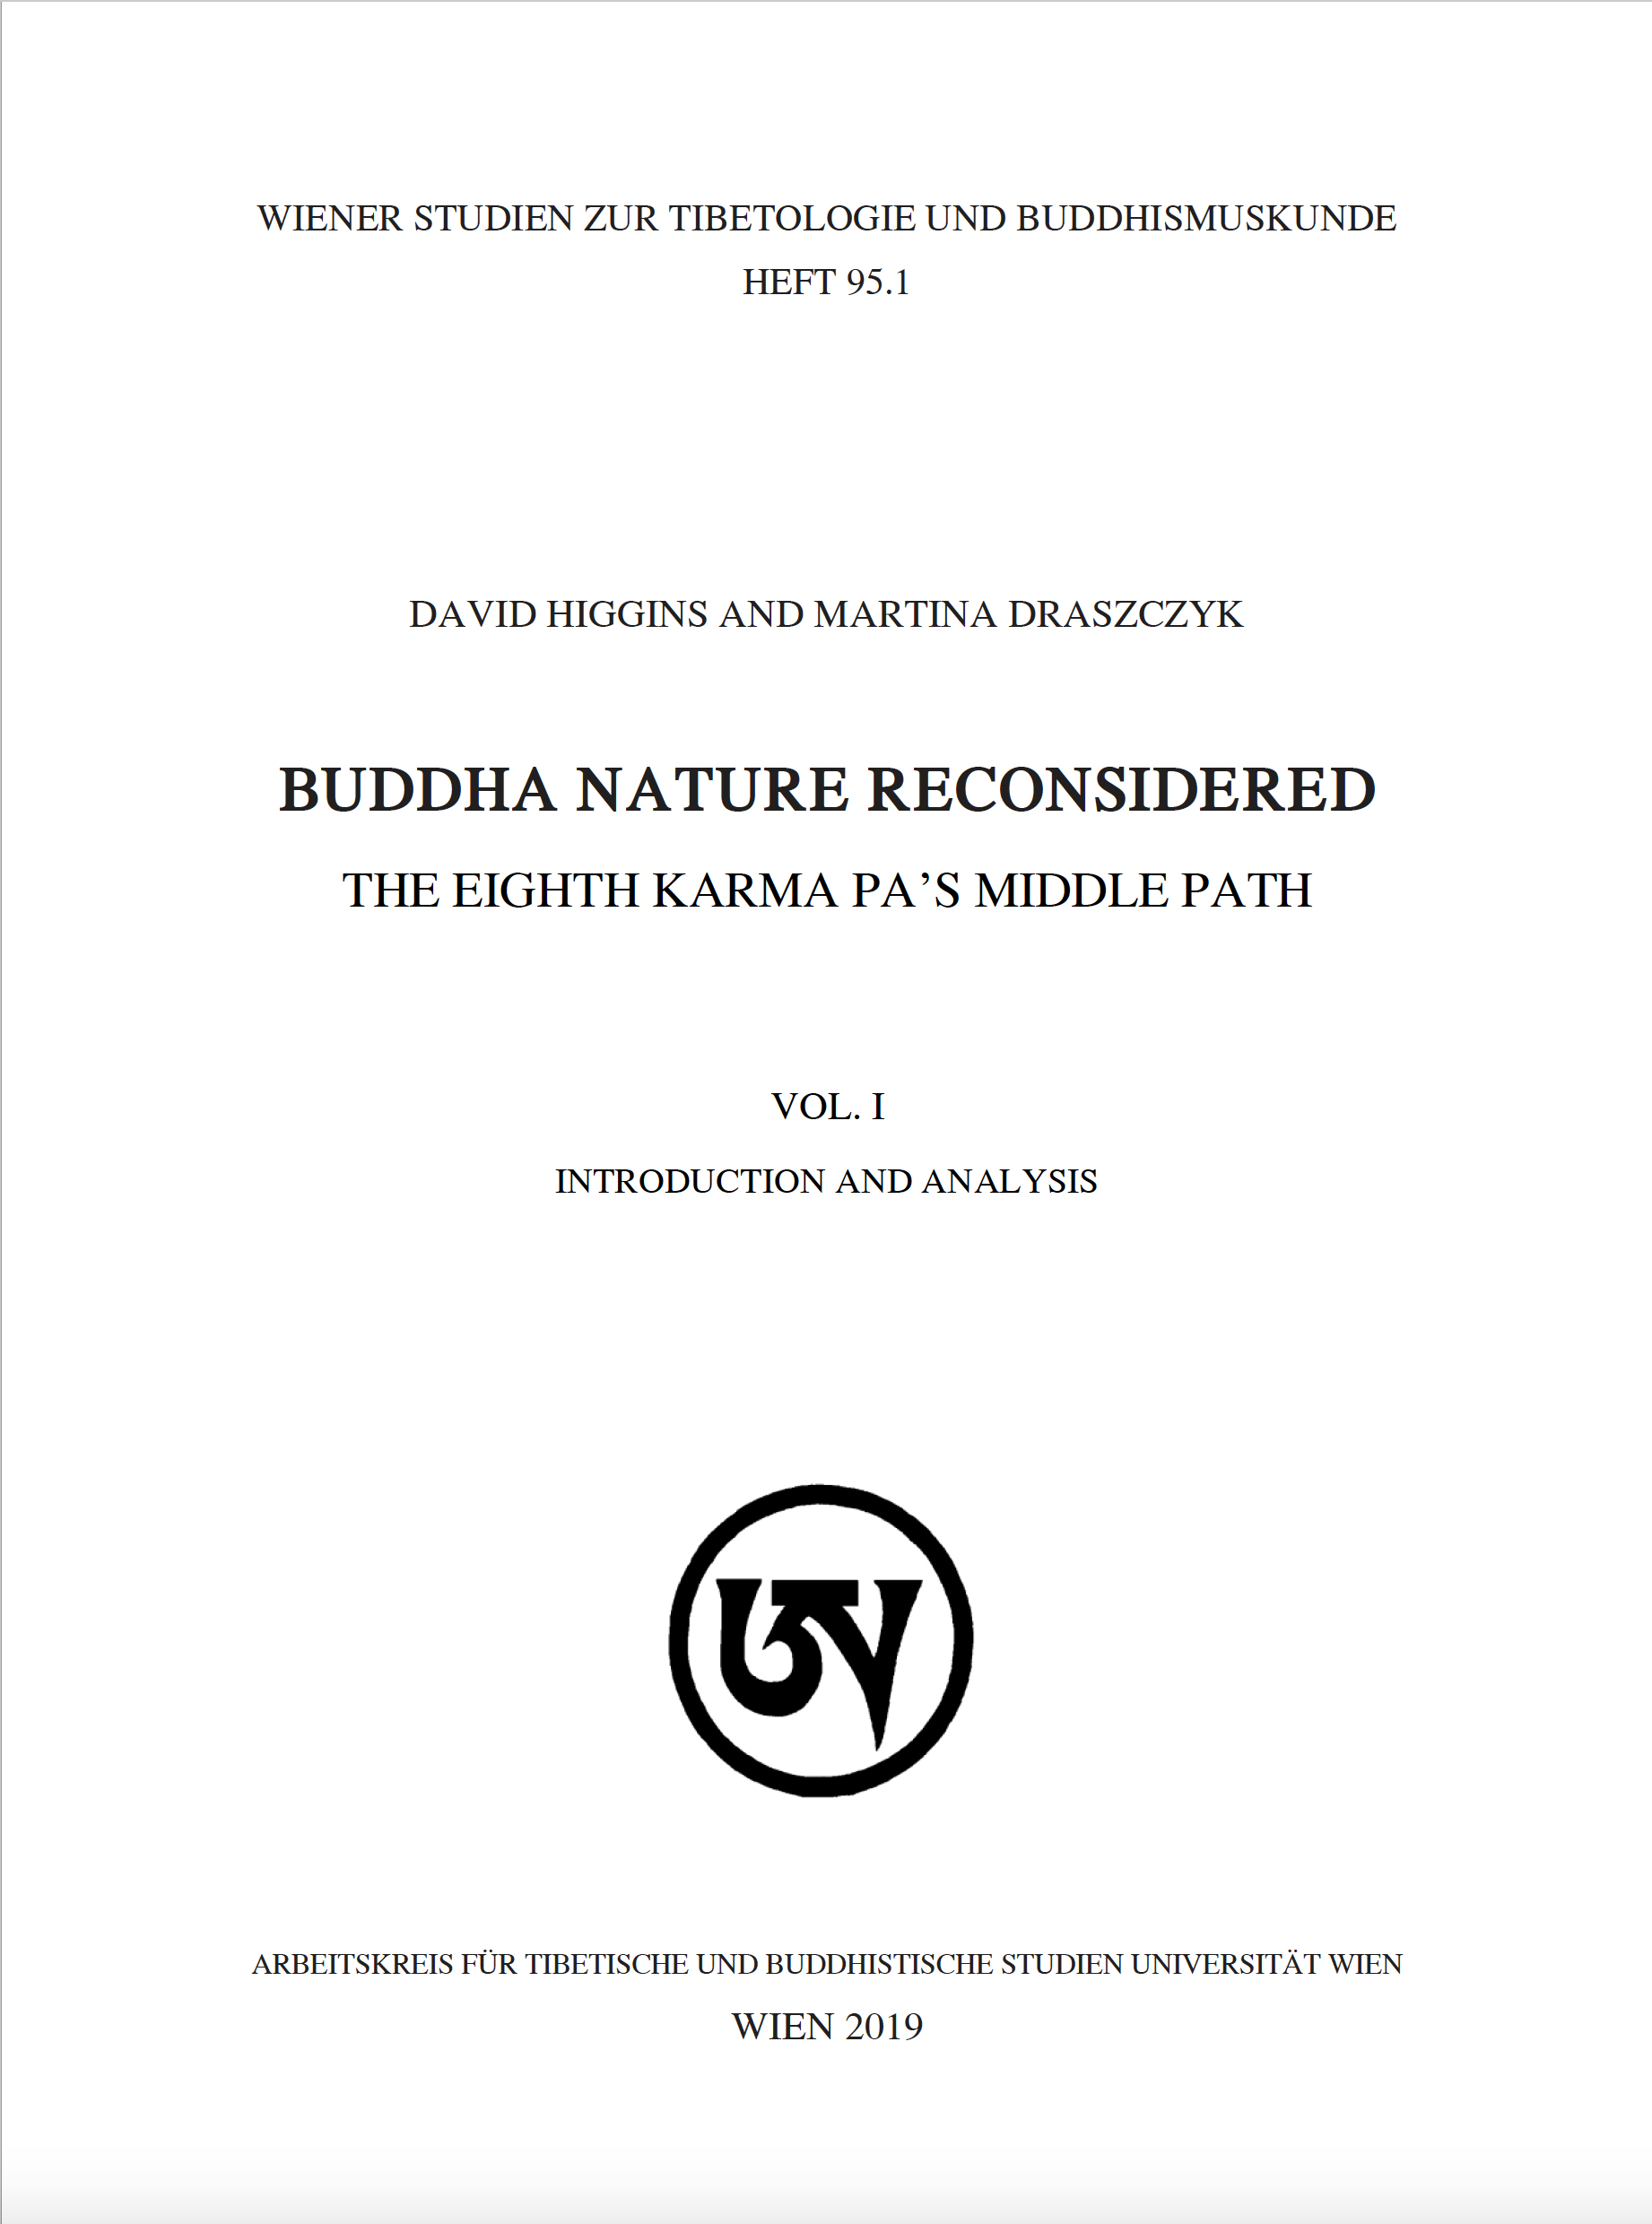 Buddha Nature Reconsidered-front.jpg